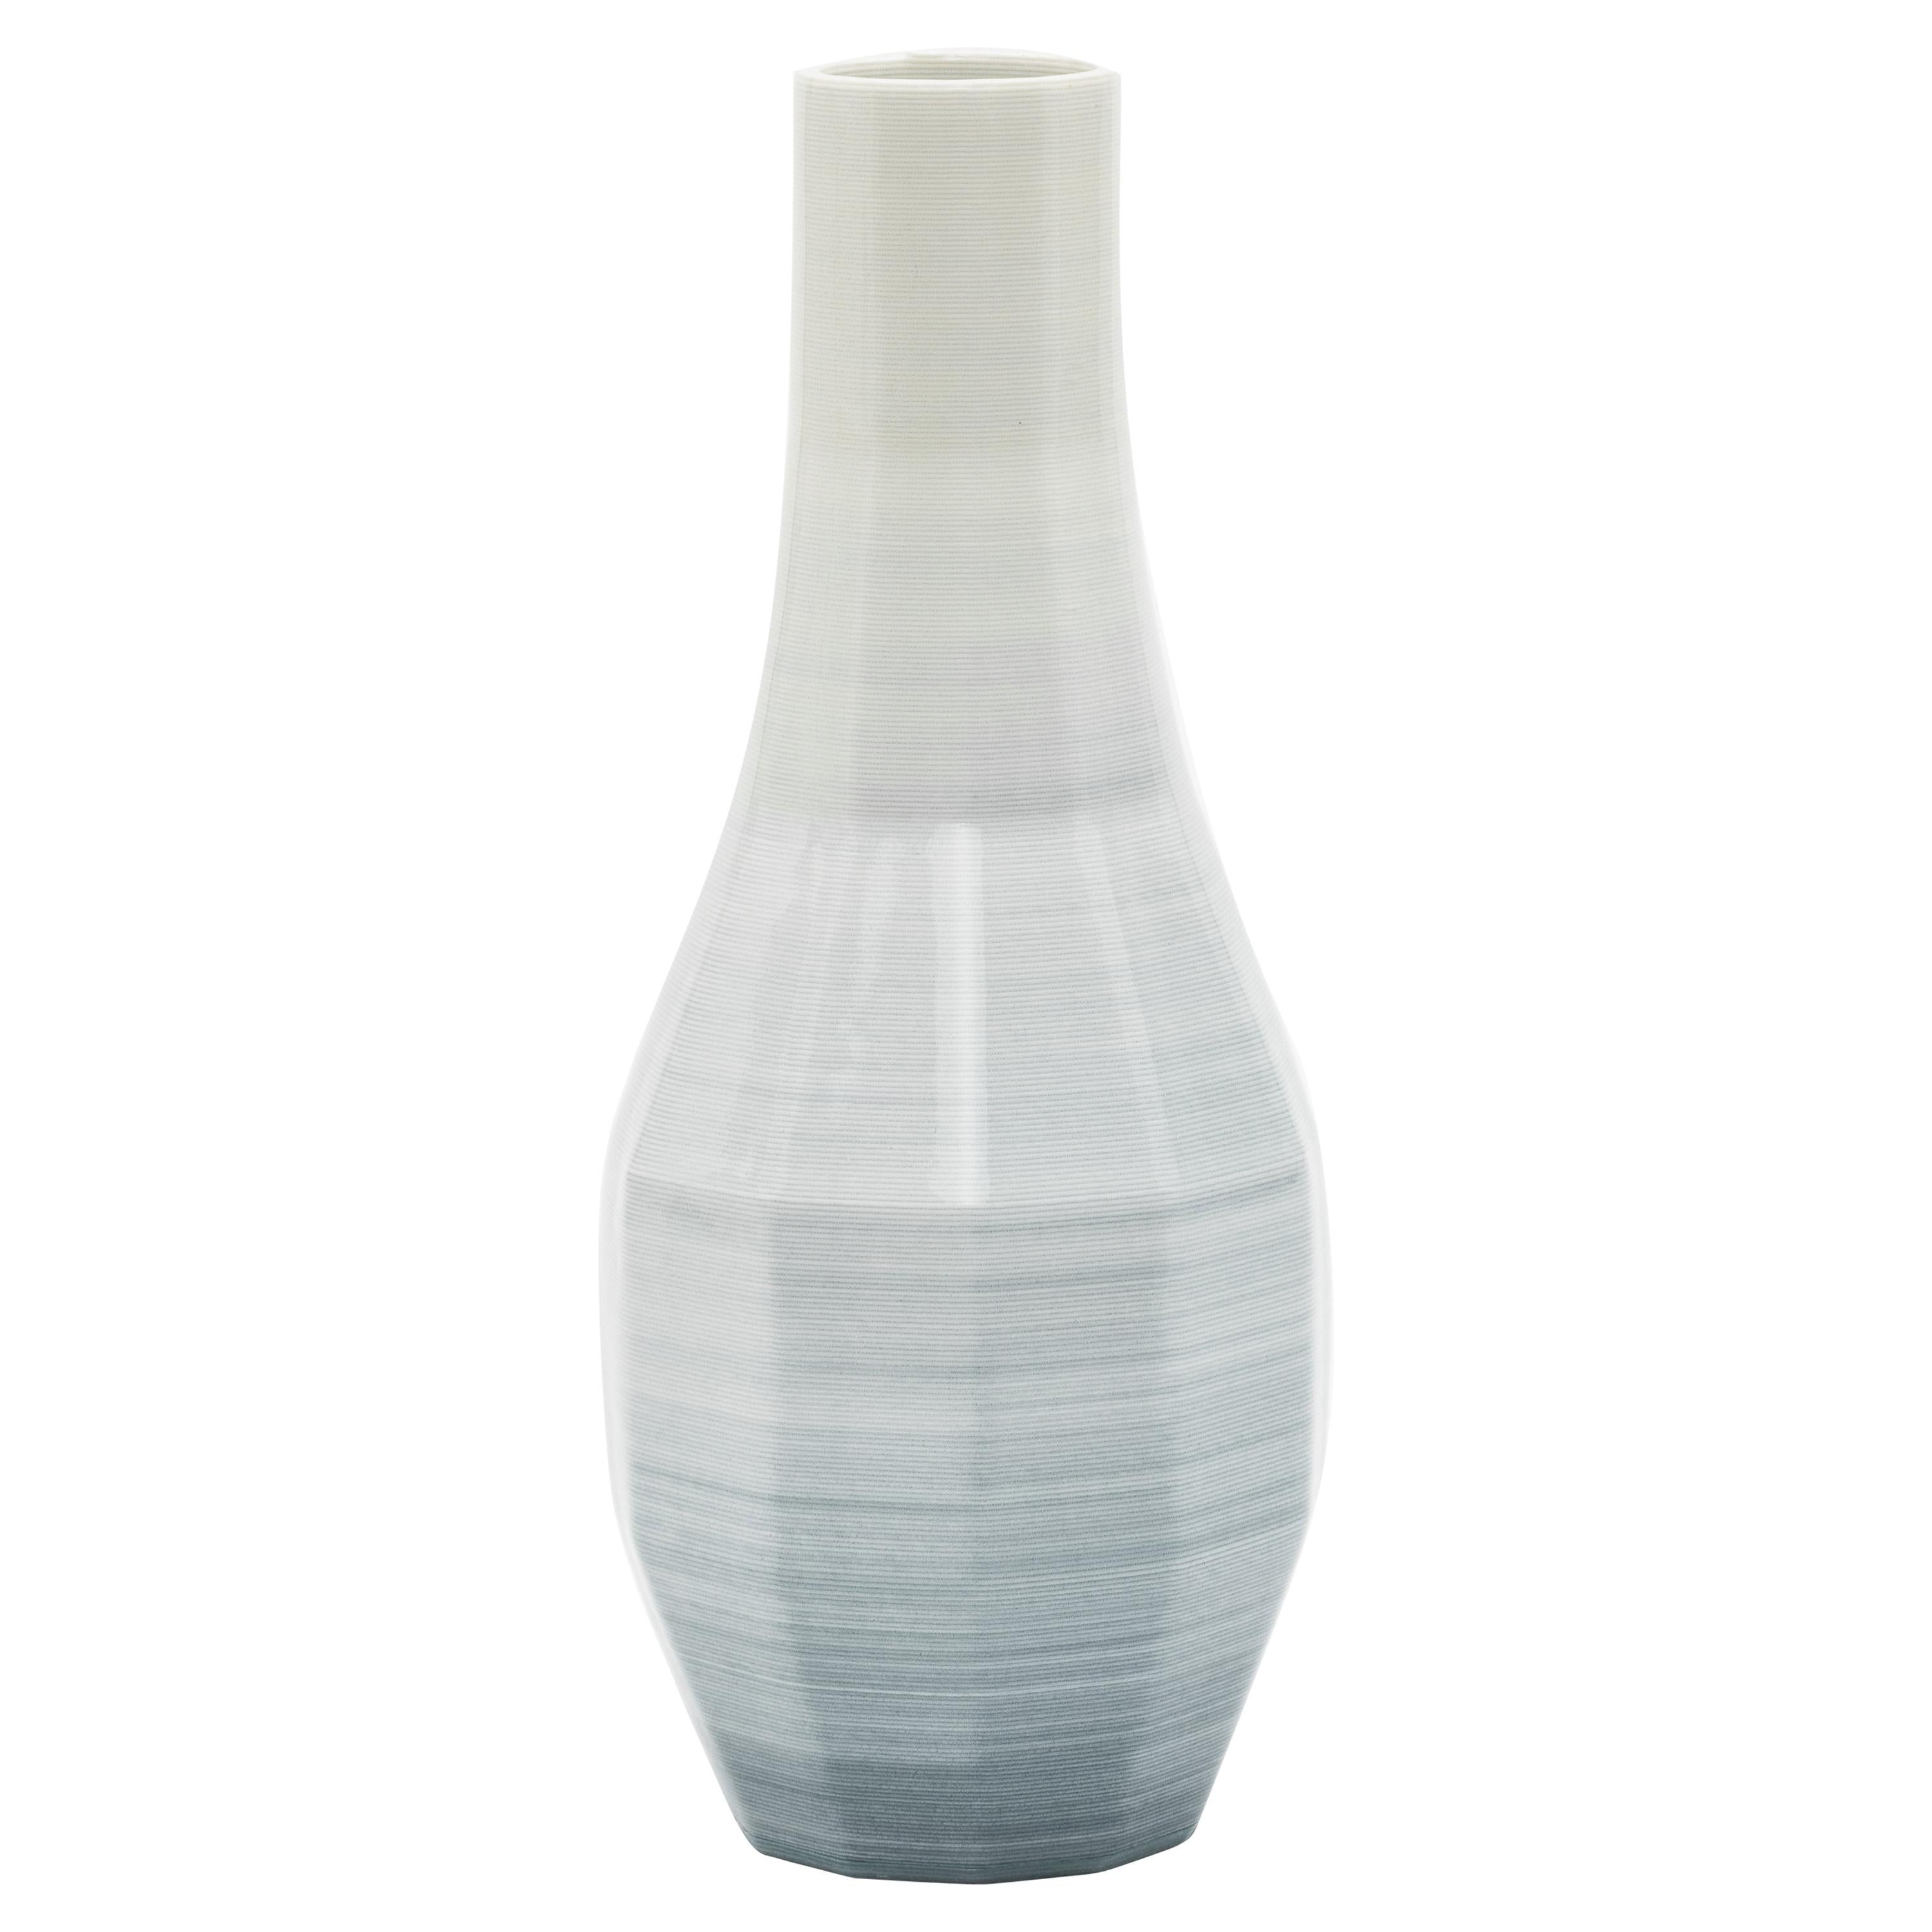 Small Porcelain Gradient Vase by Philipp Aduatz